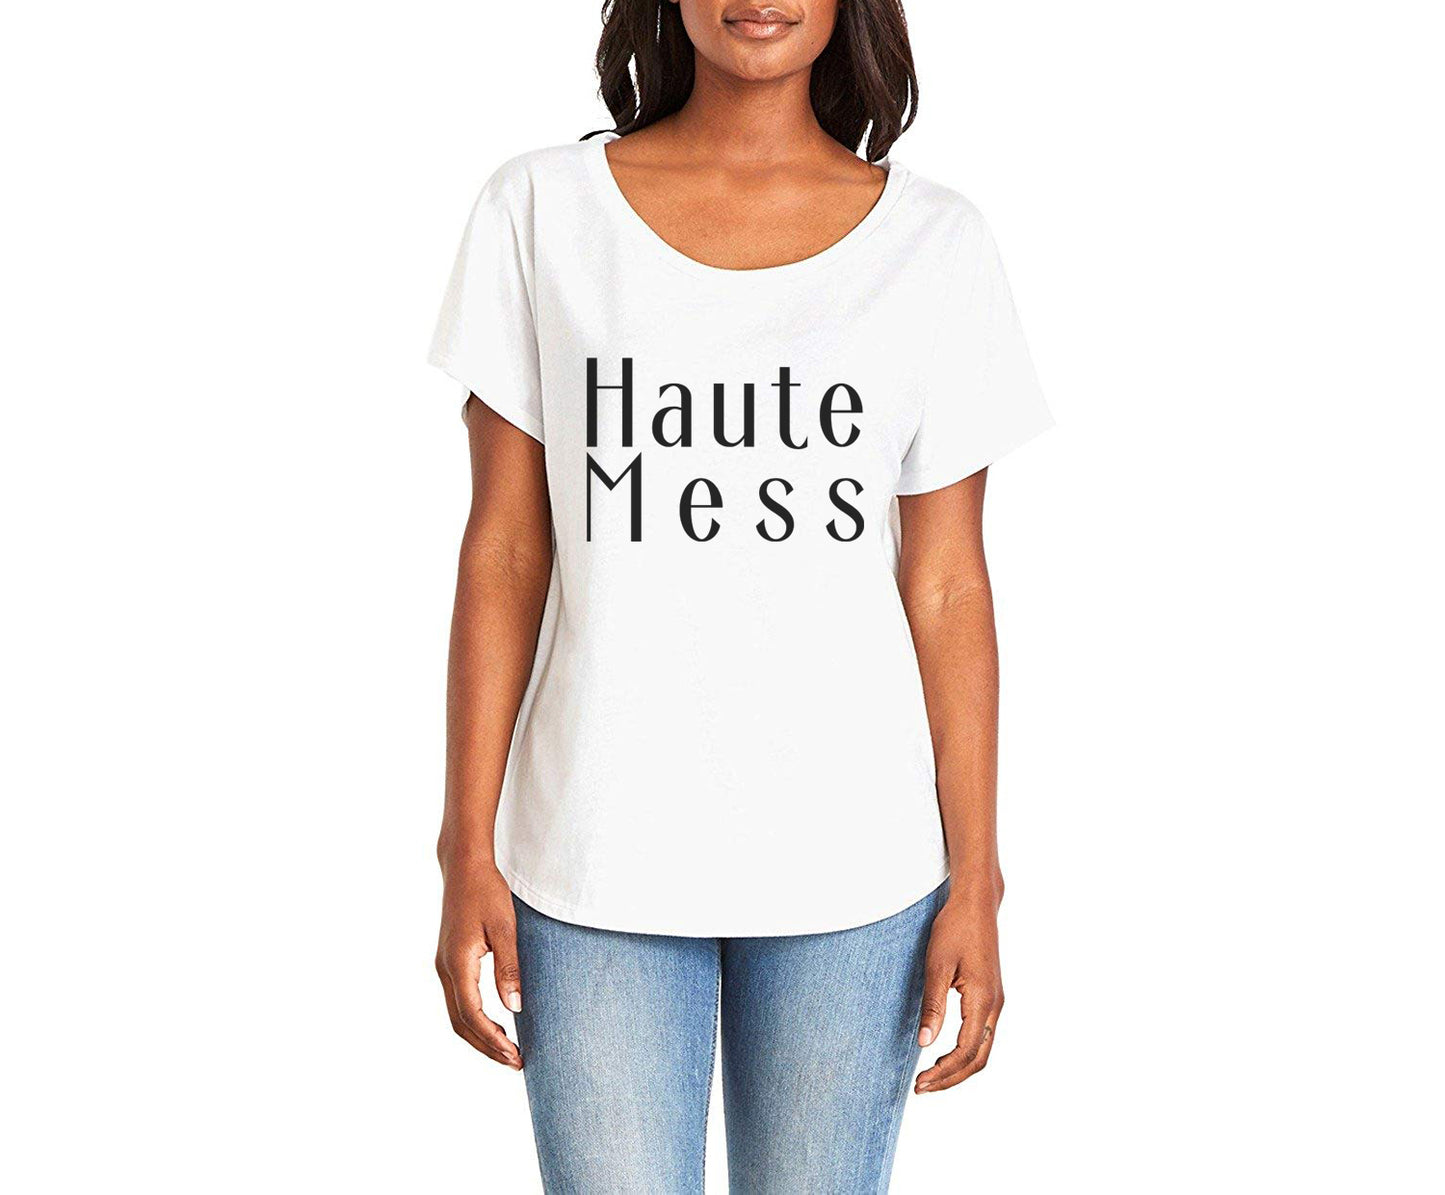 Haute Mess Ladies Tee Shirt - In Grey & White